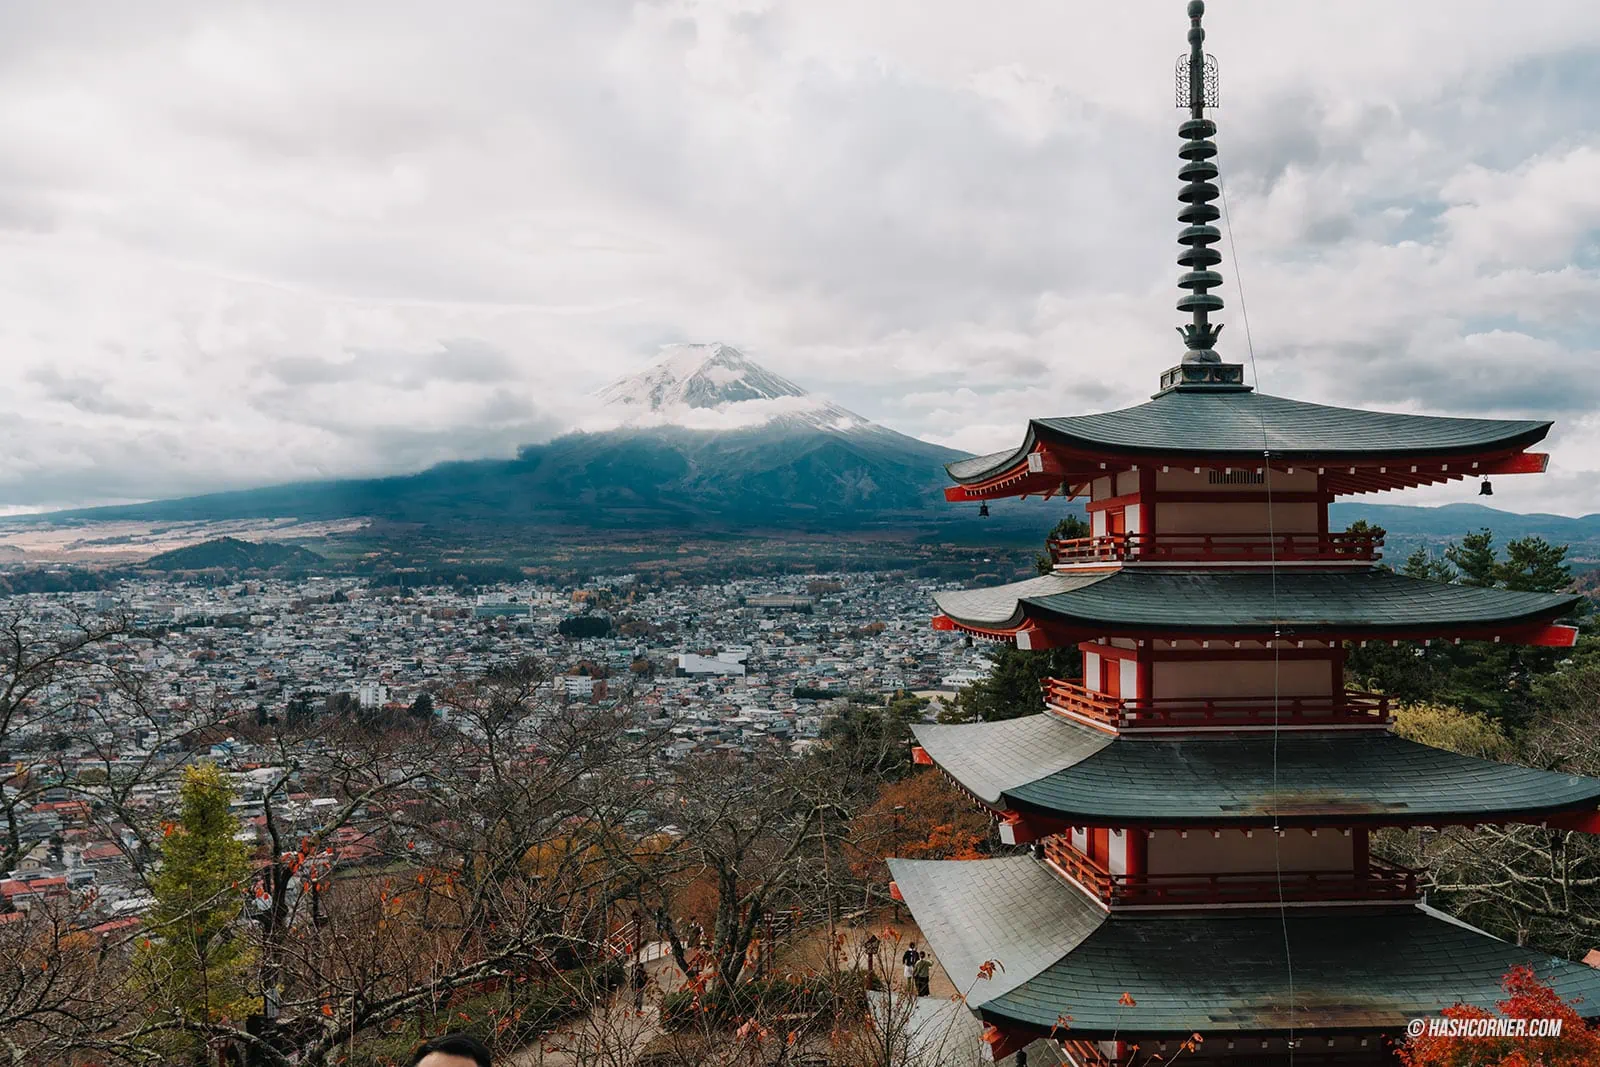 Kawaguchiko Travel Review: Chasing the Mount Fuji